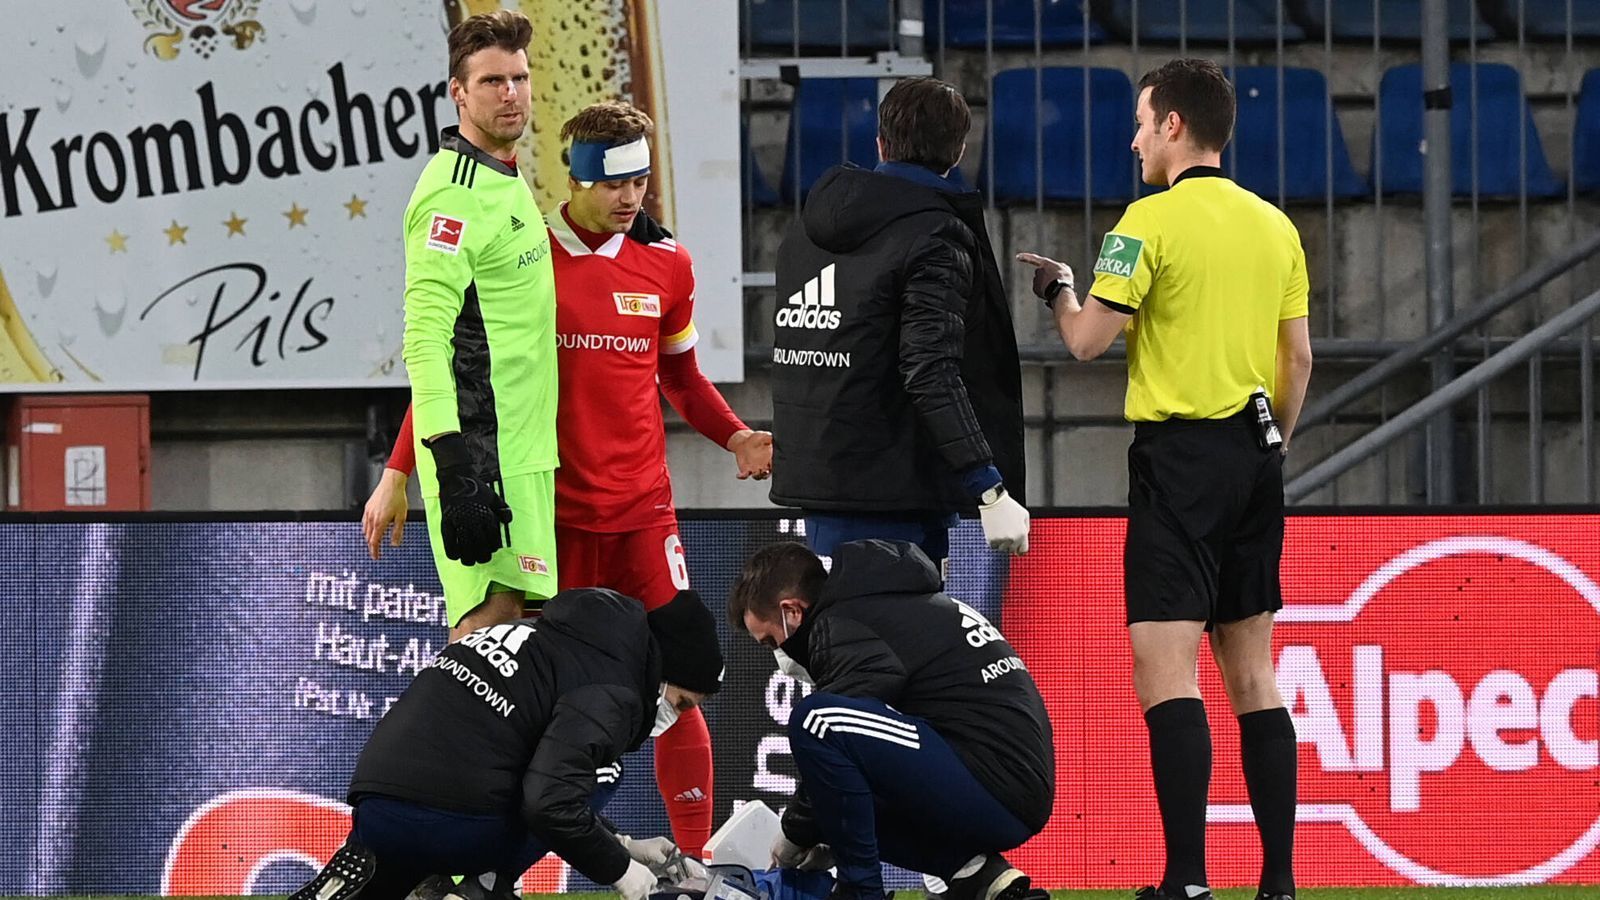 
                <strong>Das schmerzvolle Bundesliga-Duell Bielefeld vs. Union</strong><br>
                Das angeschlagene Duo musste minutenlang behandelt werden, konnte aber glücklicherweise doch weiterspielen. 
              